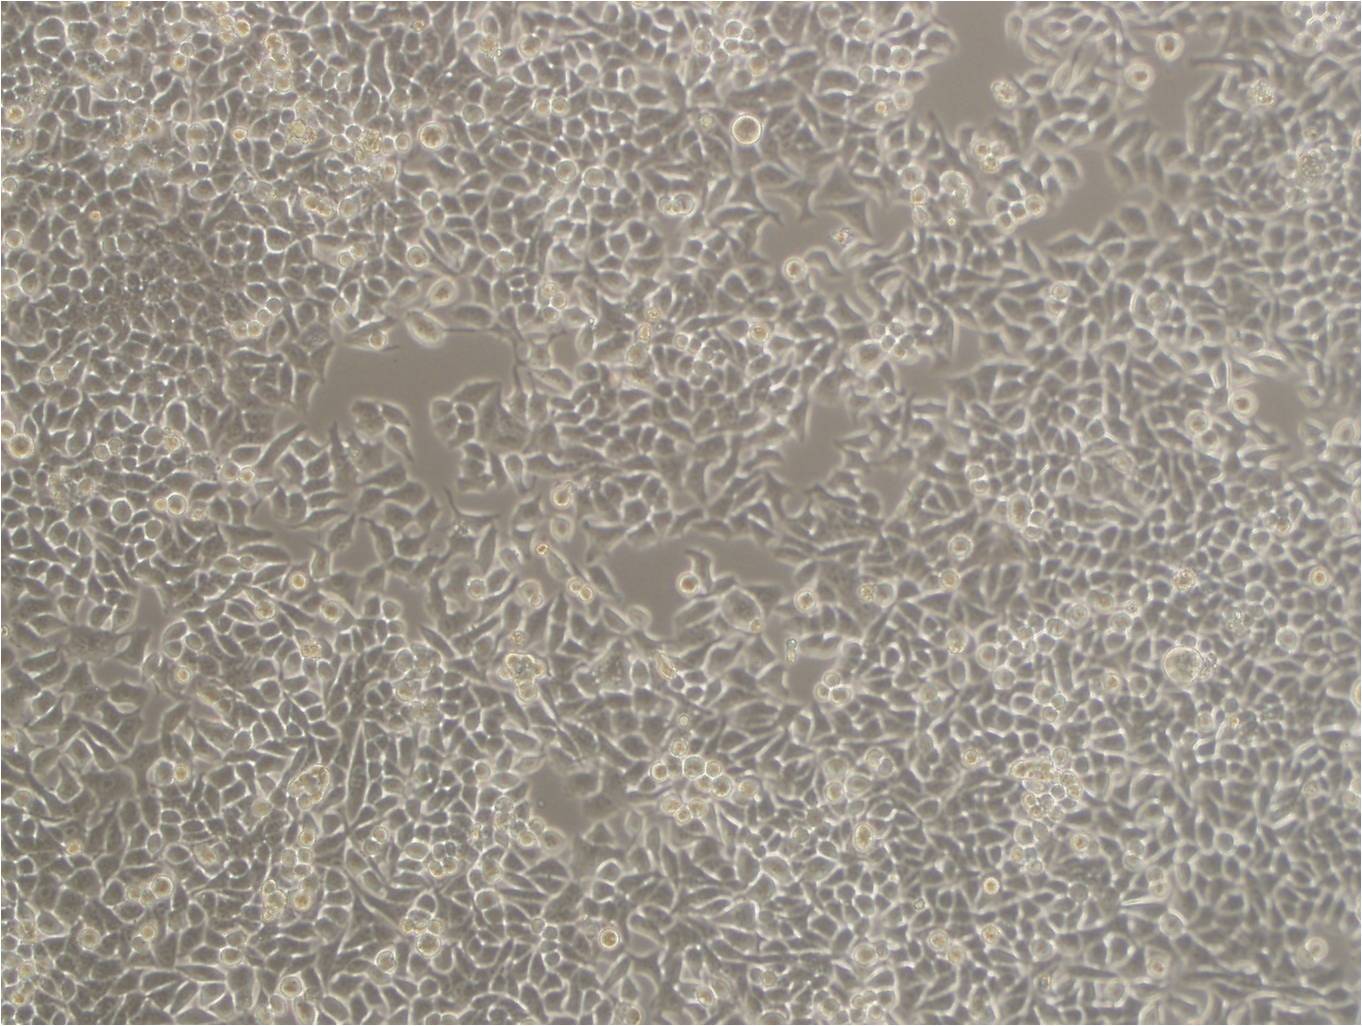 CC-LP-1 Cell|人胆管癌细胞,CC-LP-1 Cell